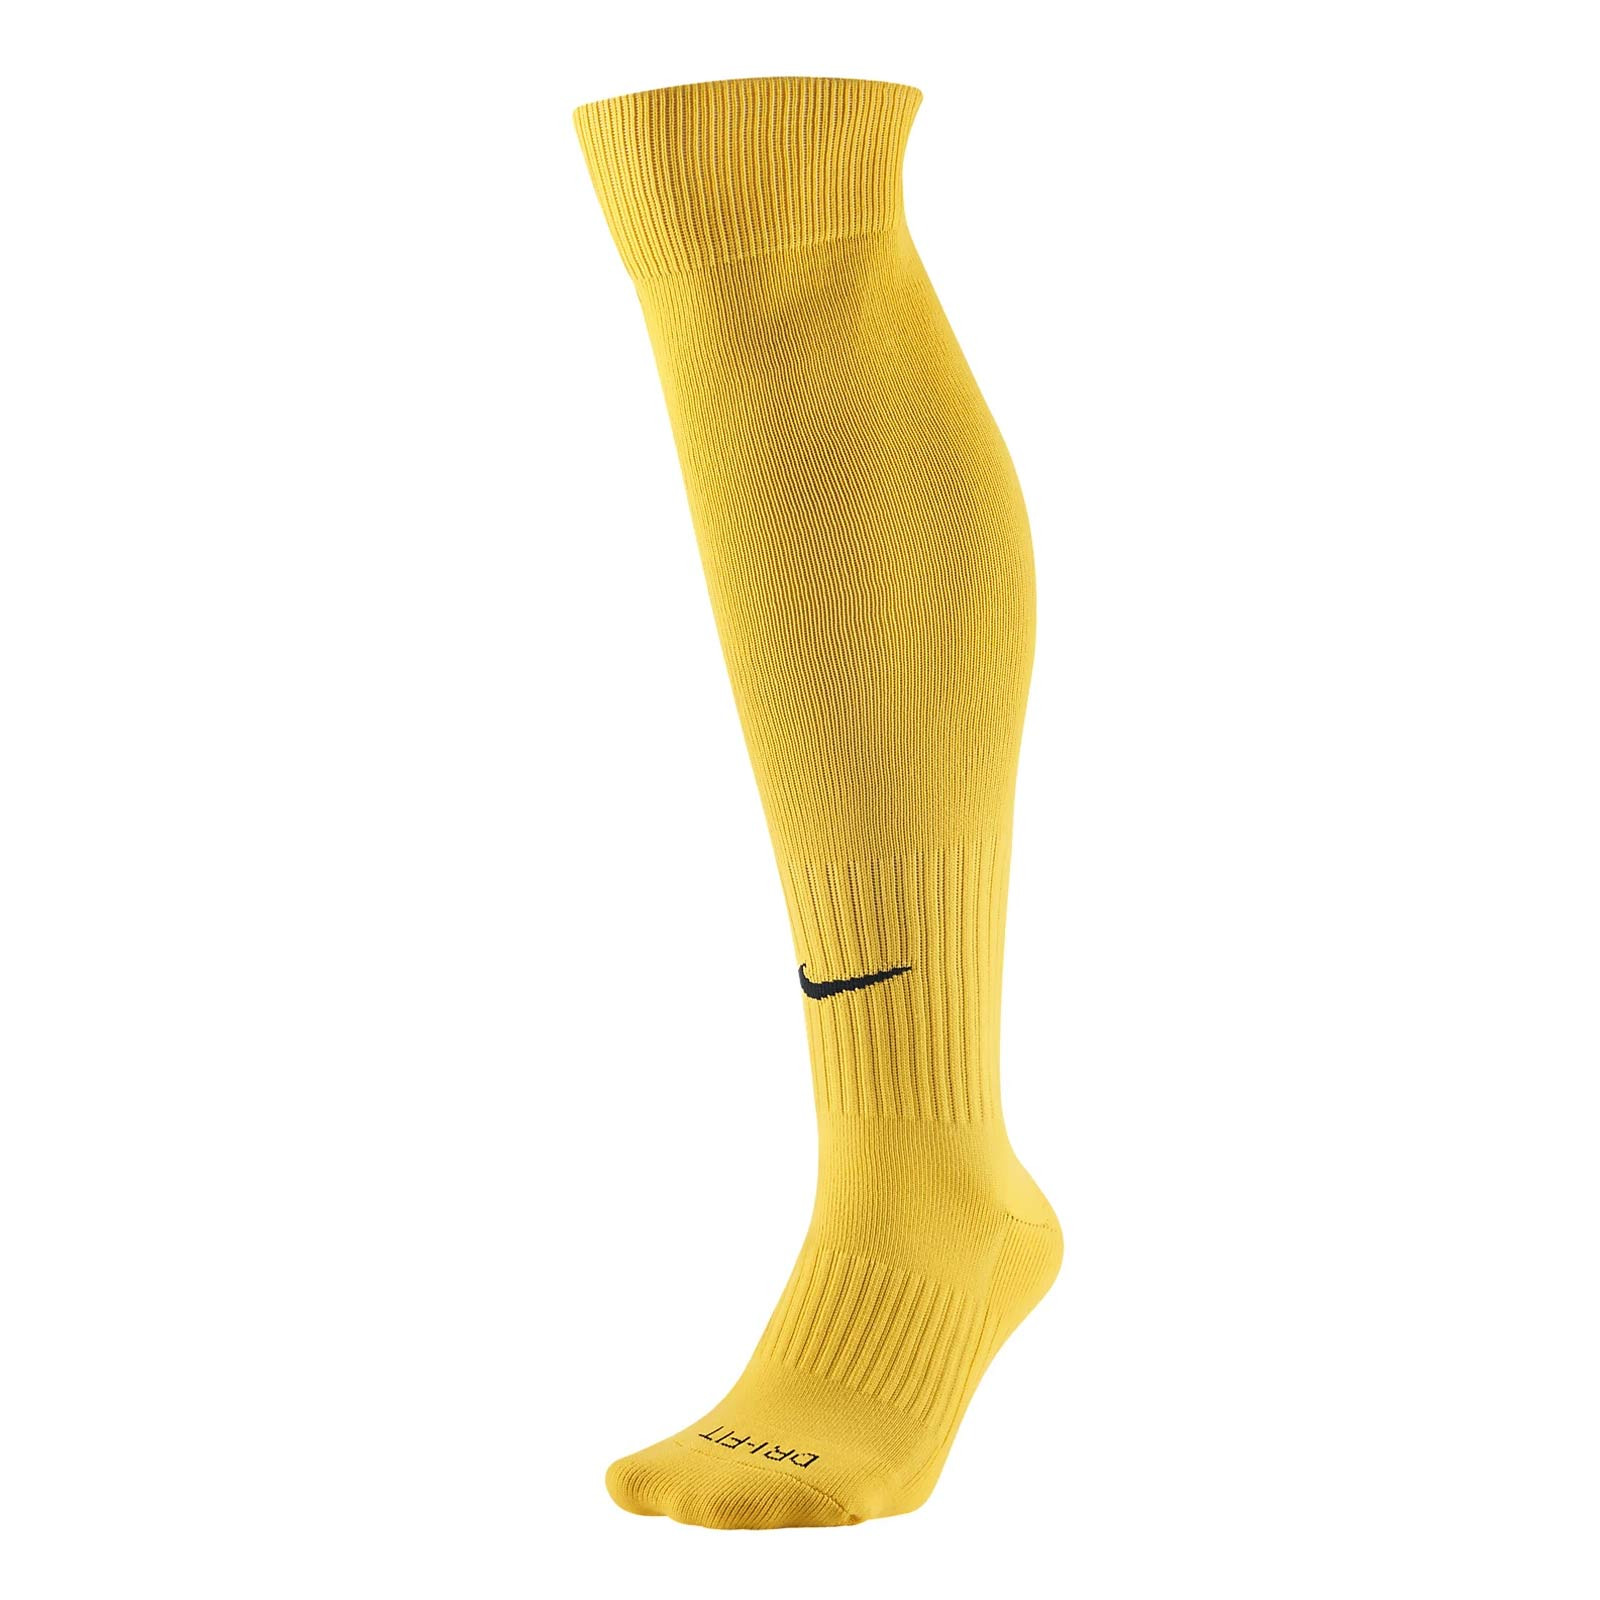 Medias Nike Classic 2 amarillas | futbolmania